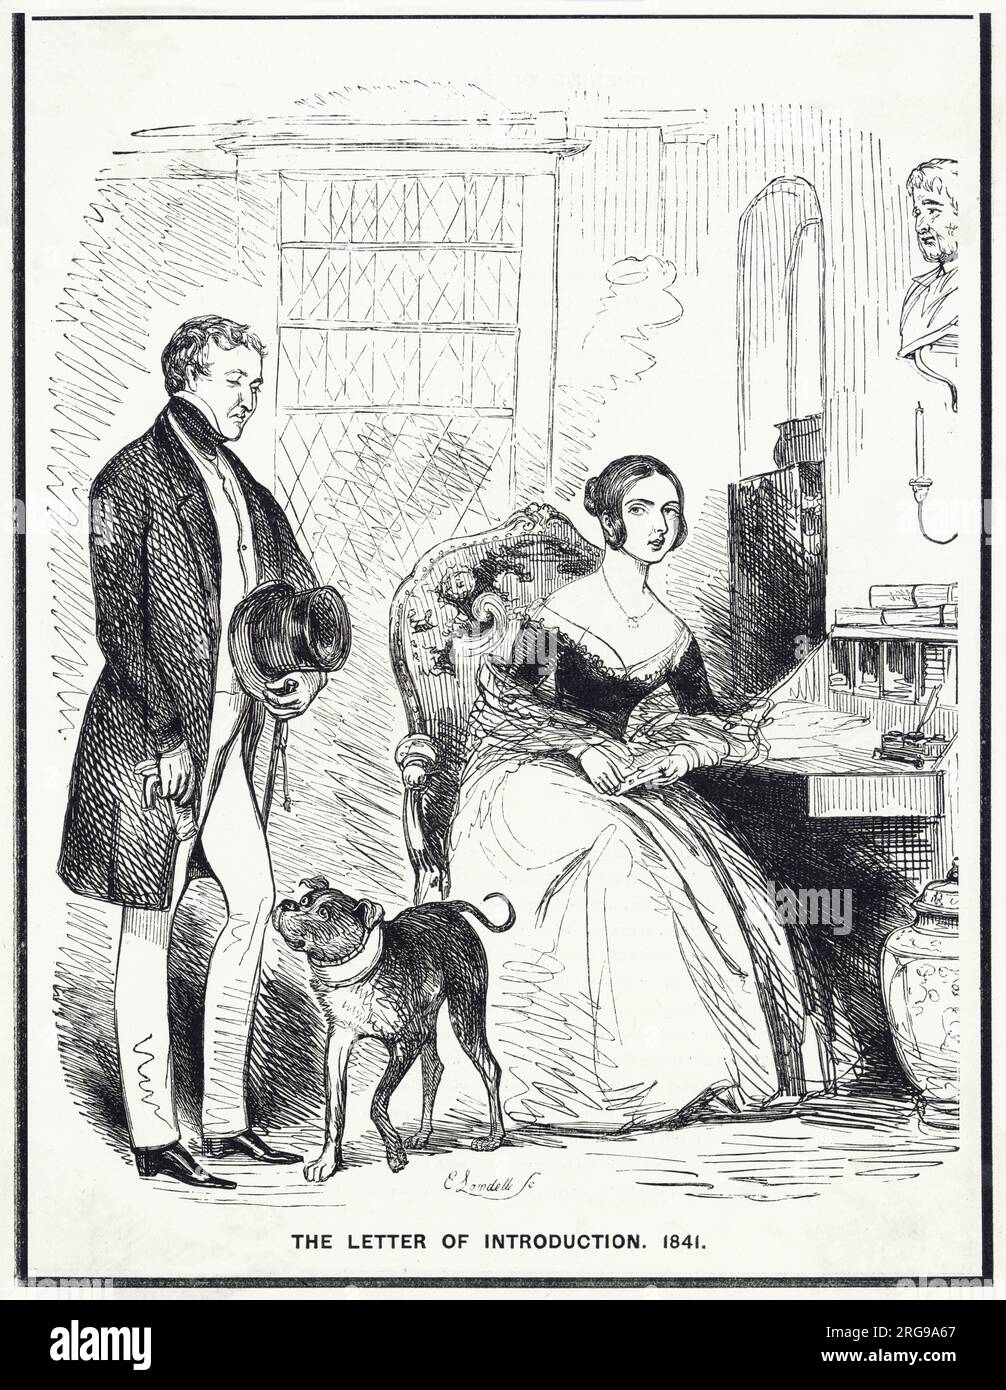 Cartoon, das Einführungsschreiben, 1841 - Königin Victoria und ihr neu gewählter Premierminister Sir Robert Peel (konservativ). Stockfoto